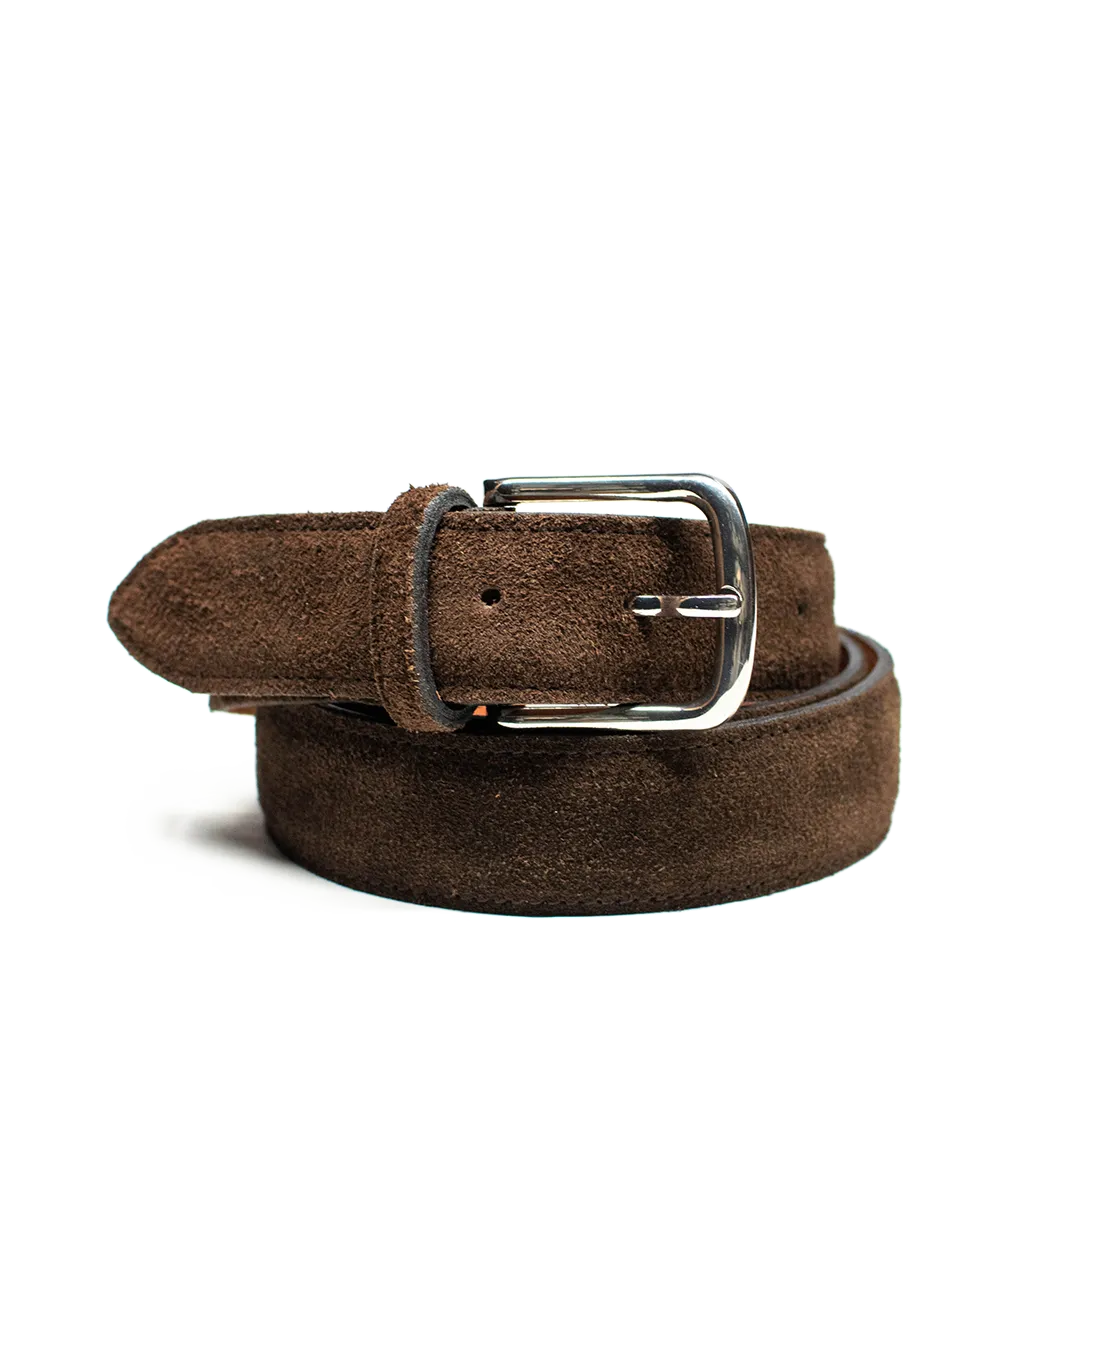 Cinturón Clásico de Gamuza en color marrón